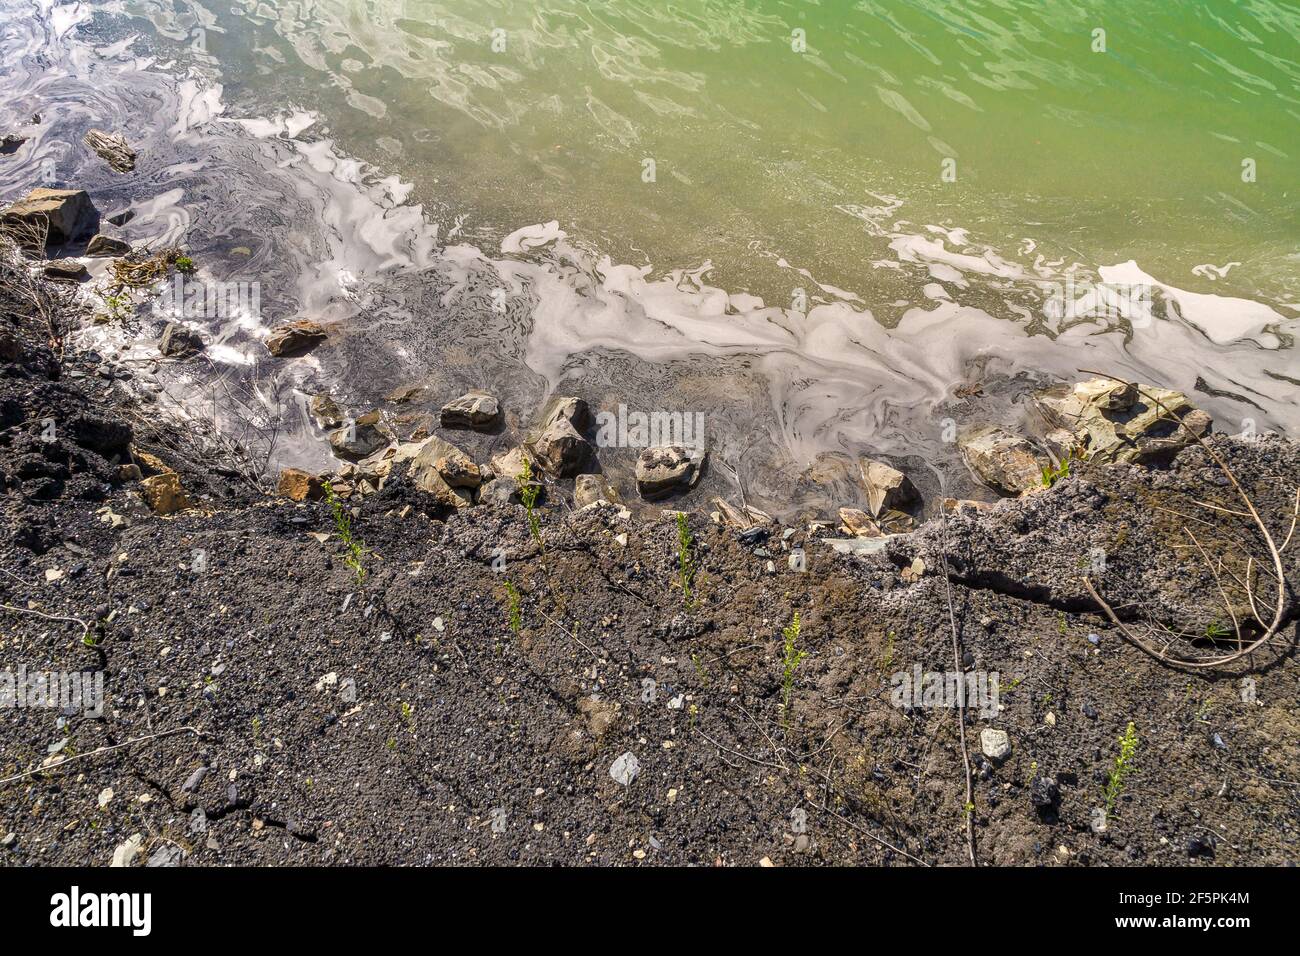 la riva della discarica è lavata da stabilizzato acque reflue ricoperte da schiuma tossica sporca Foto Stock